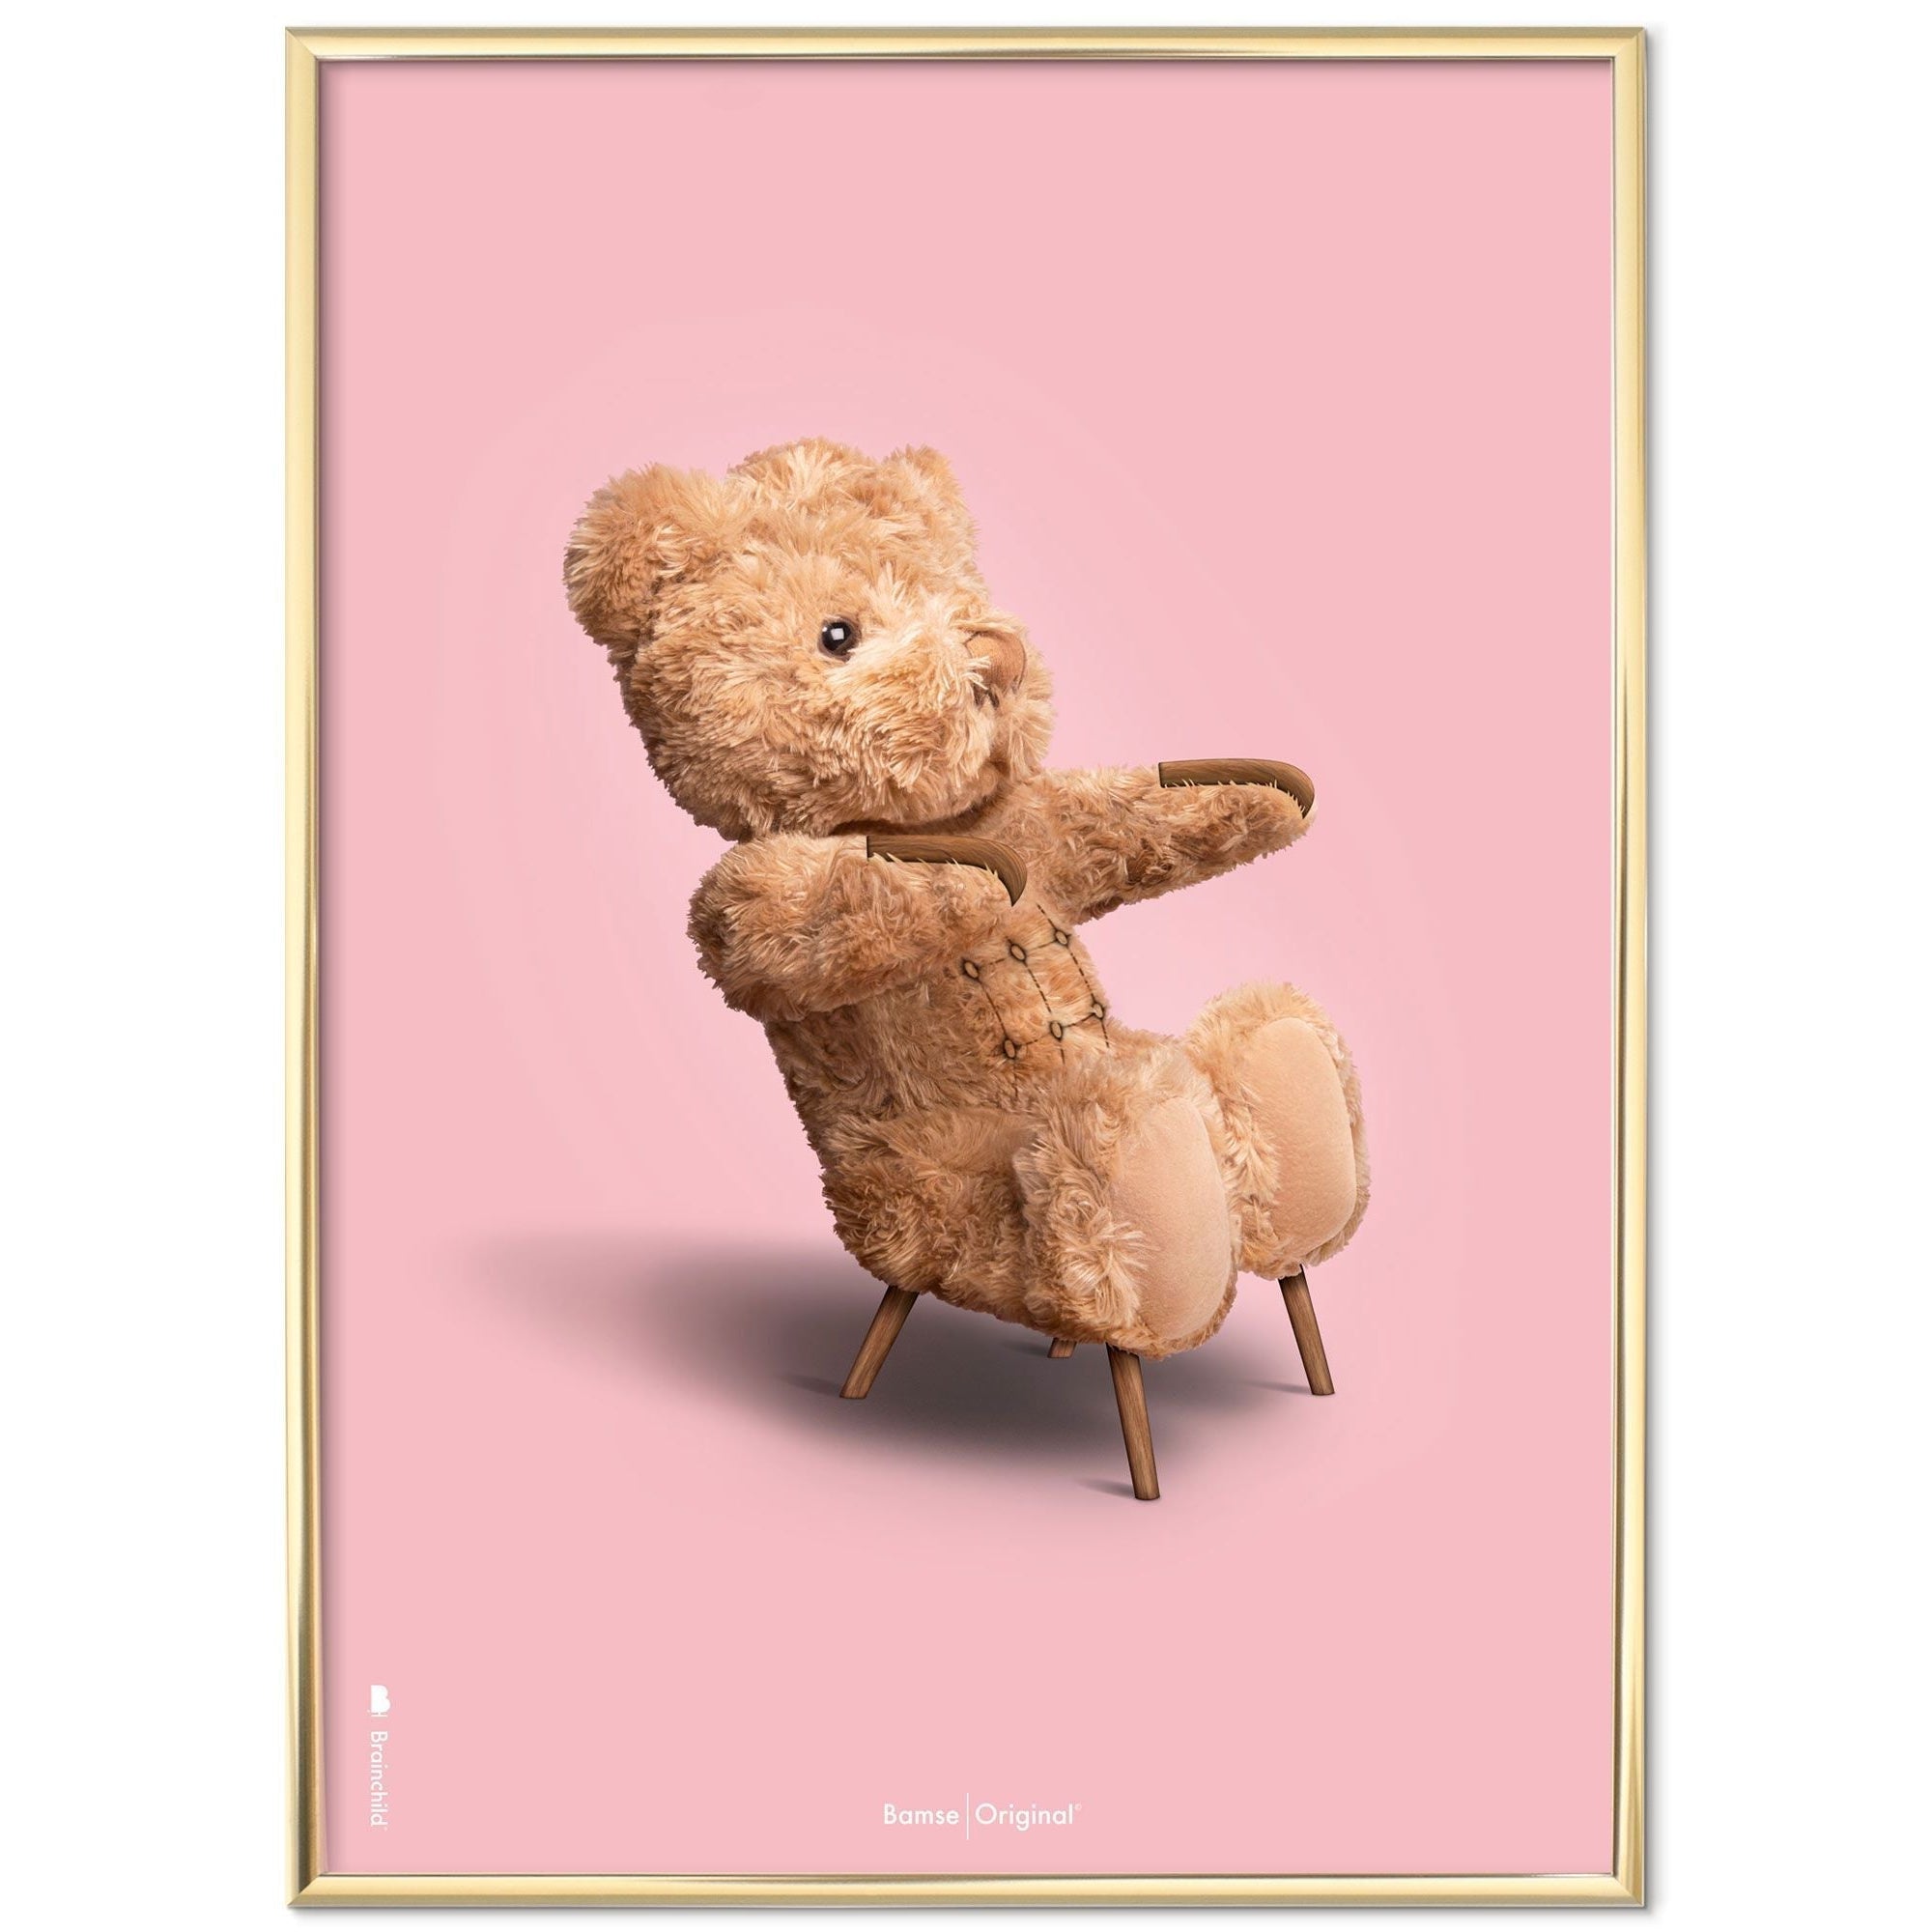 Brainchild Teddy Bear Classic plakát z mosazného barevného rámu 30x40 cm, růžové pozadí